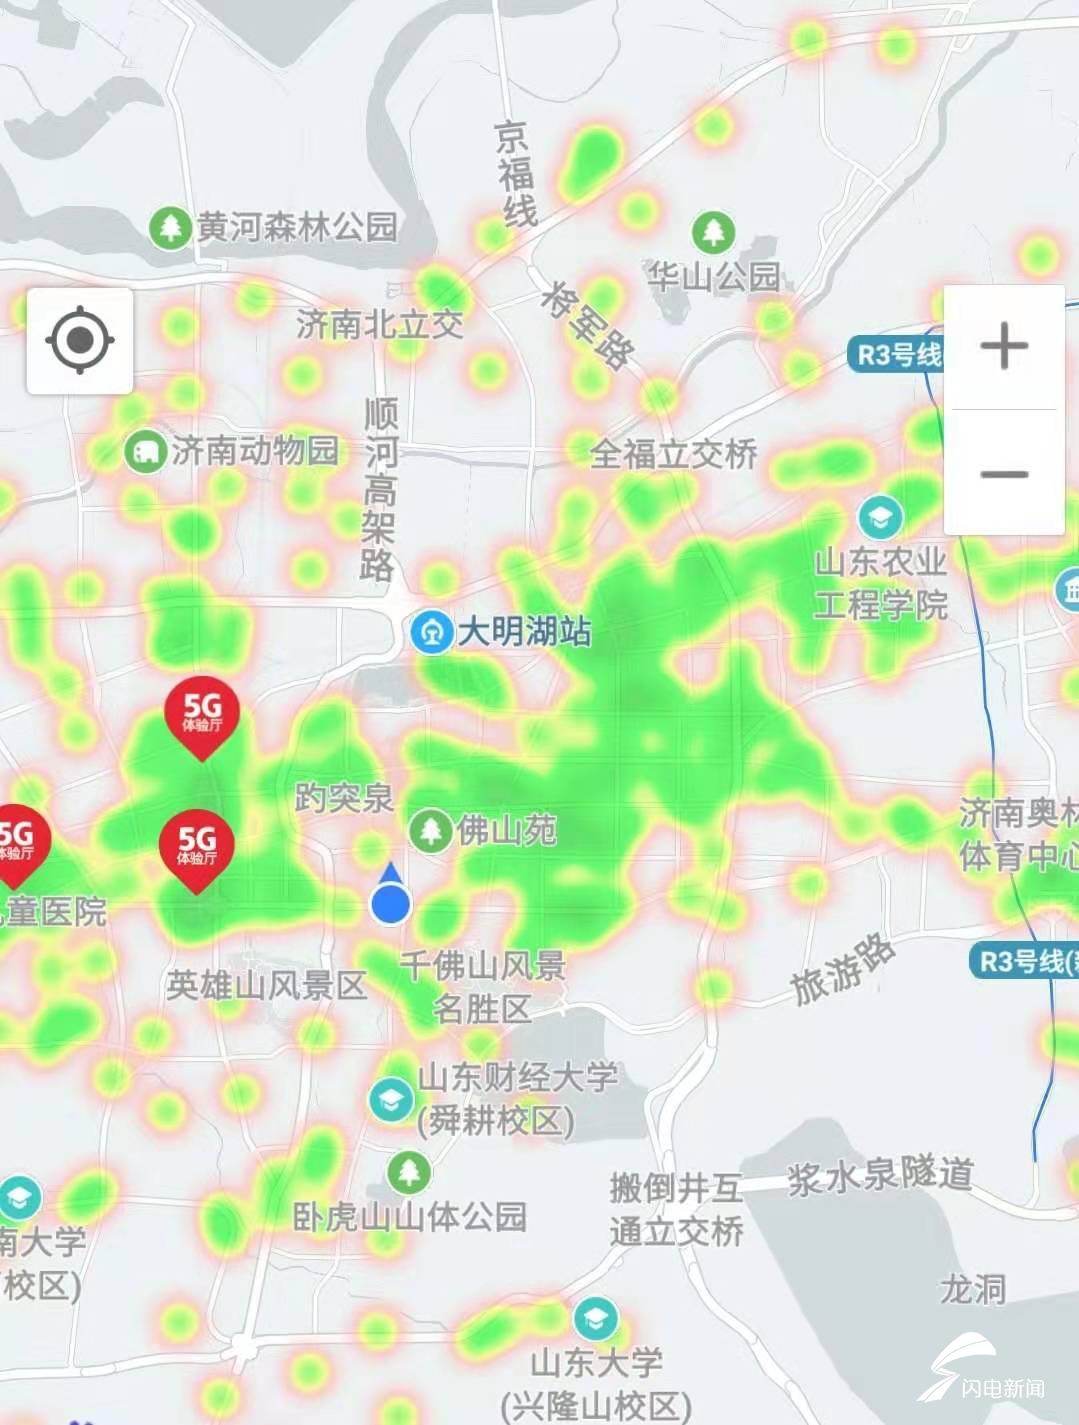 中国移动5g信号覆盖查询地图